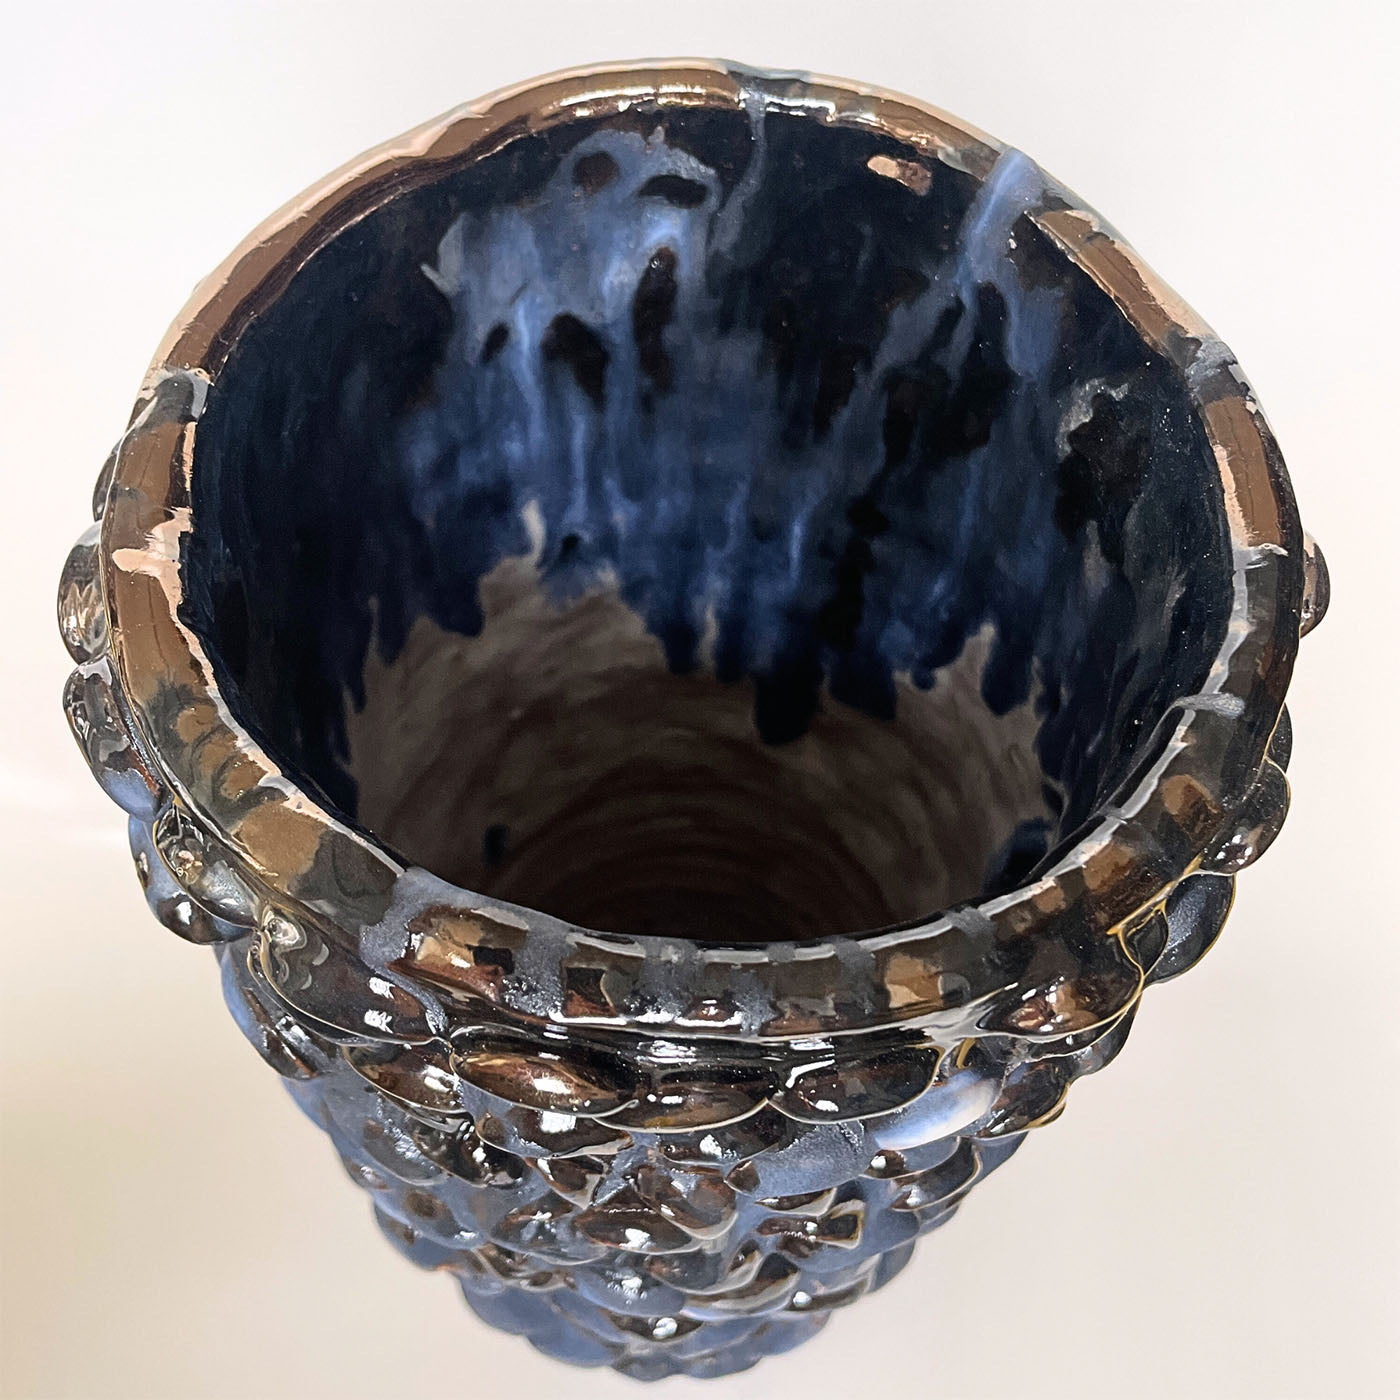 Zylindrische Vase in Blau und Schwarz - Alternative Ansicht 1